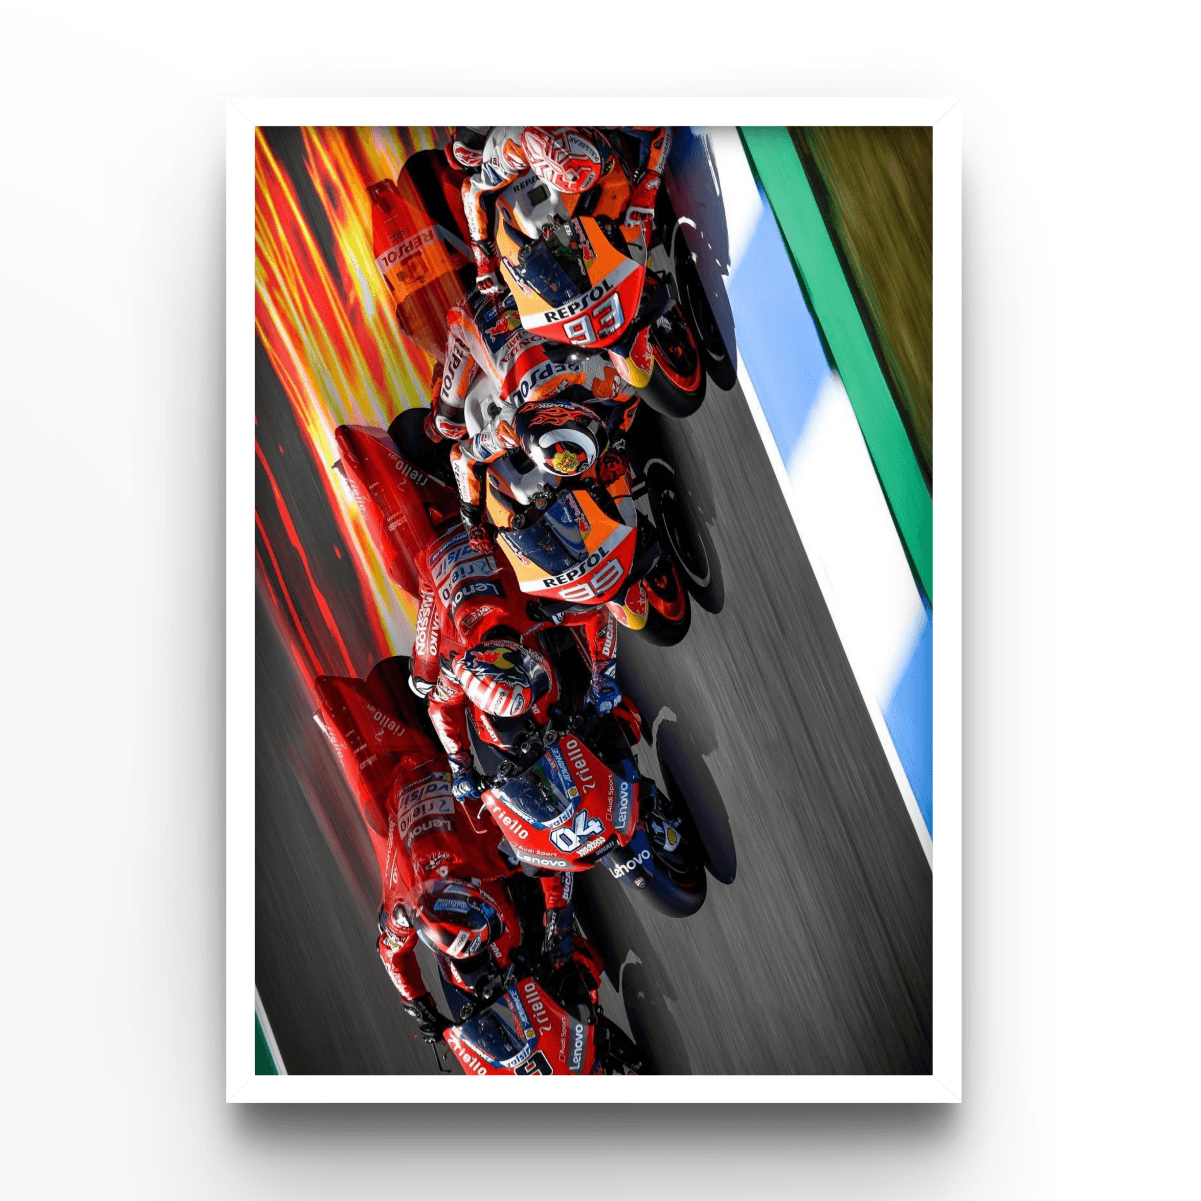 Race 3 - A4, A3, A2 Posters Base - Poster Print Shop / Art Prints / PostersBase